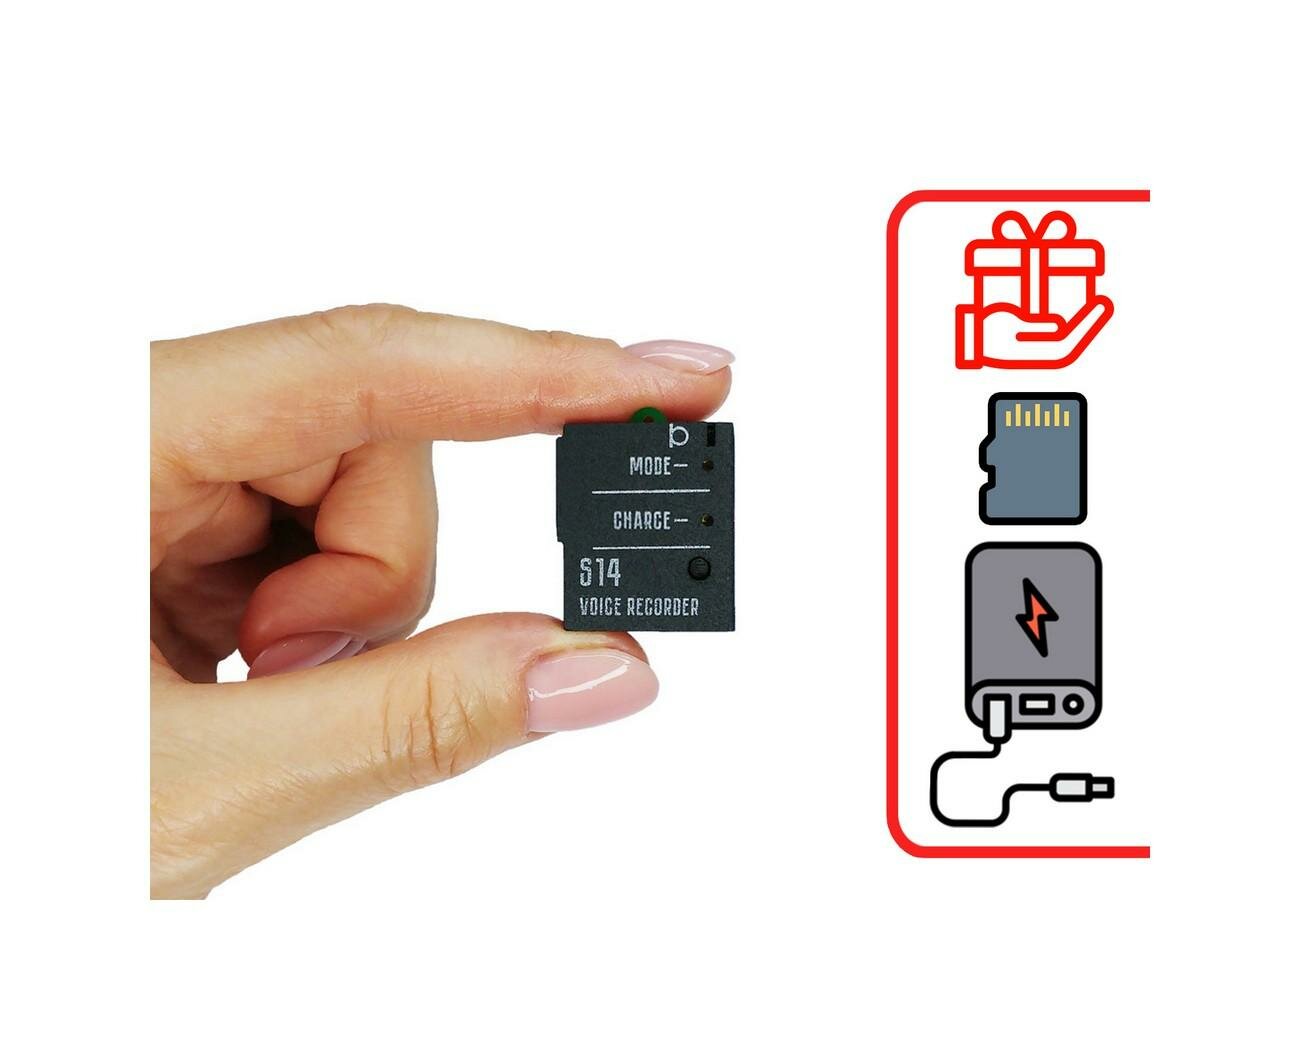 Диктофон Сорока 14(3) (E88136DI) + 2 подарка (microSD 32Gb и Power-bank 10000 mAh) - аудиозапись мини диктофон / цена на диктофон / диктофоны для запи